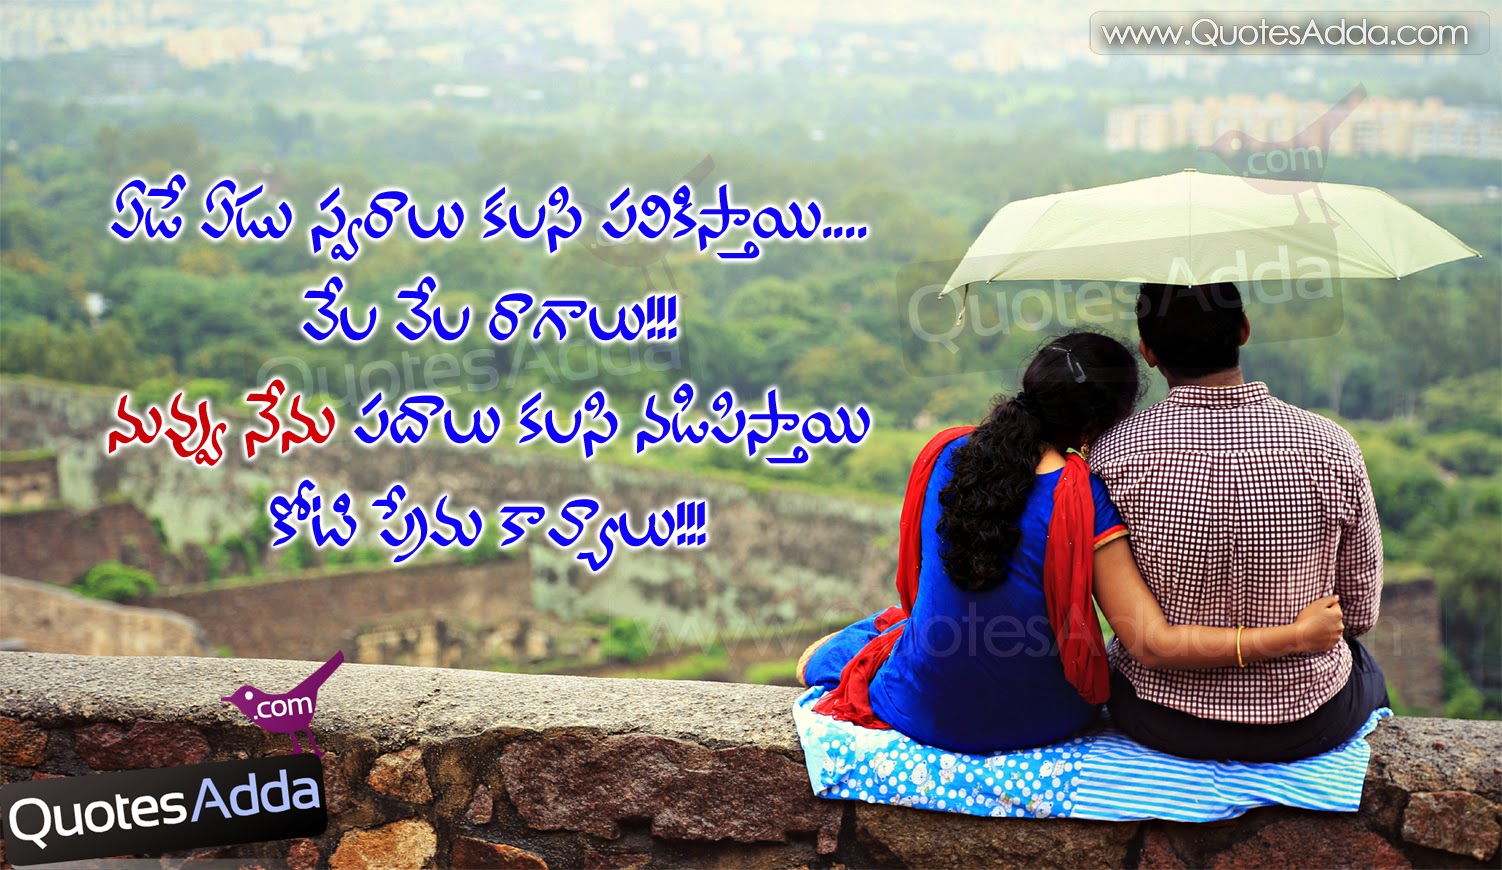 Love Quotes For Husband: Love Quotes For Husband In Telugu